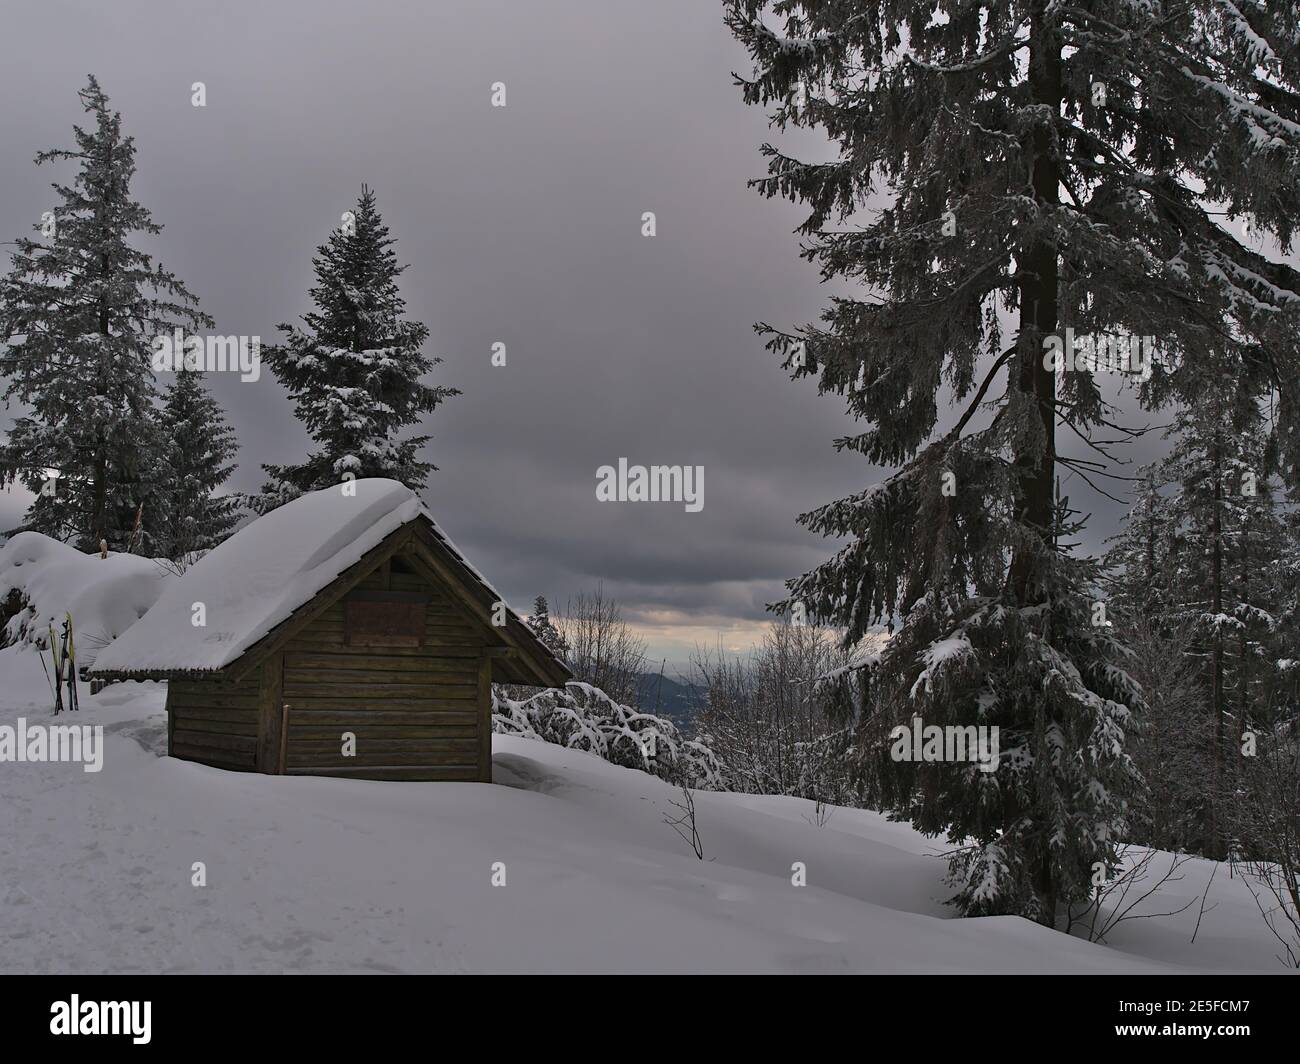 Friedliche Winterlandschaft mit hölzernen verschneiten Schuppen im Niedergebirge Schwarzwald am bewölkten Tag mit gefrorenen Bäumen. Stockfoto